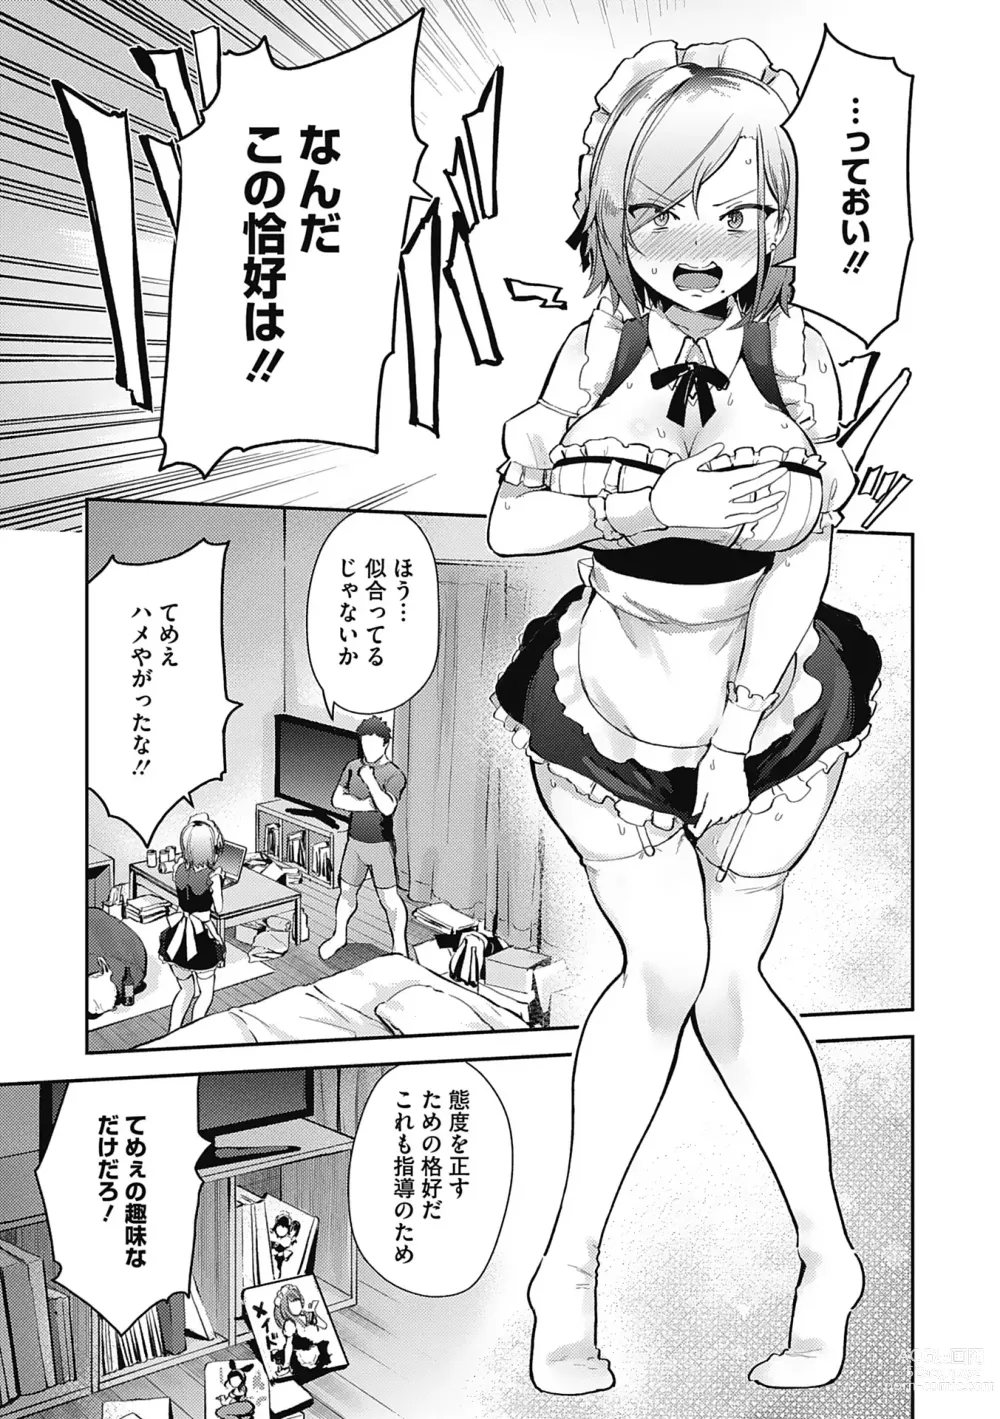 Page 87 of manga Kegasaretai-kei Kanojo.